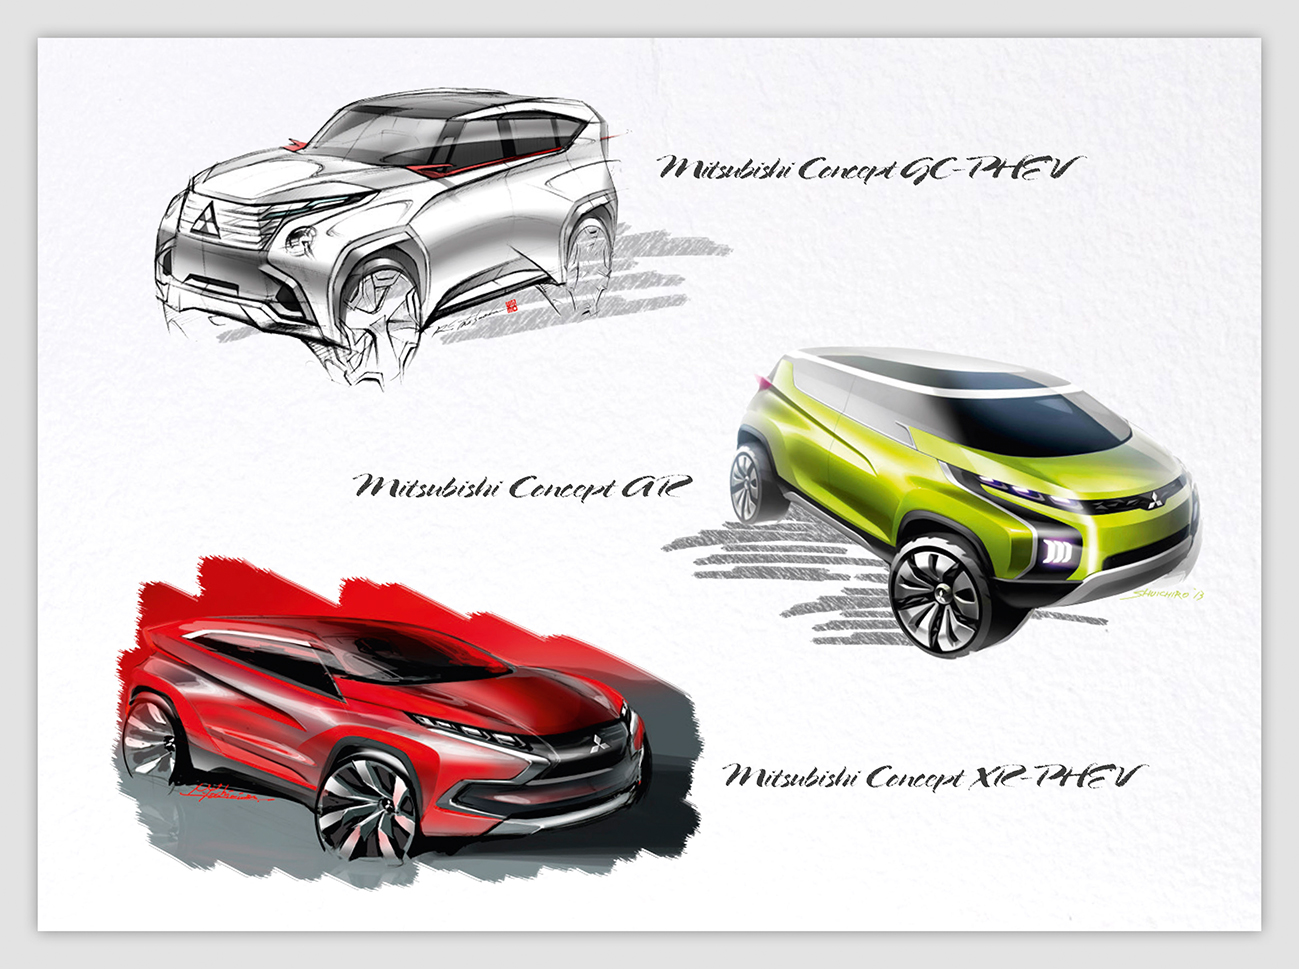 Dies sind die drei Konzepte der drei neuen Plug-In Hybridautos von Mitsubishi. Bildquelle: Mitsubishi